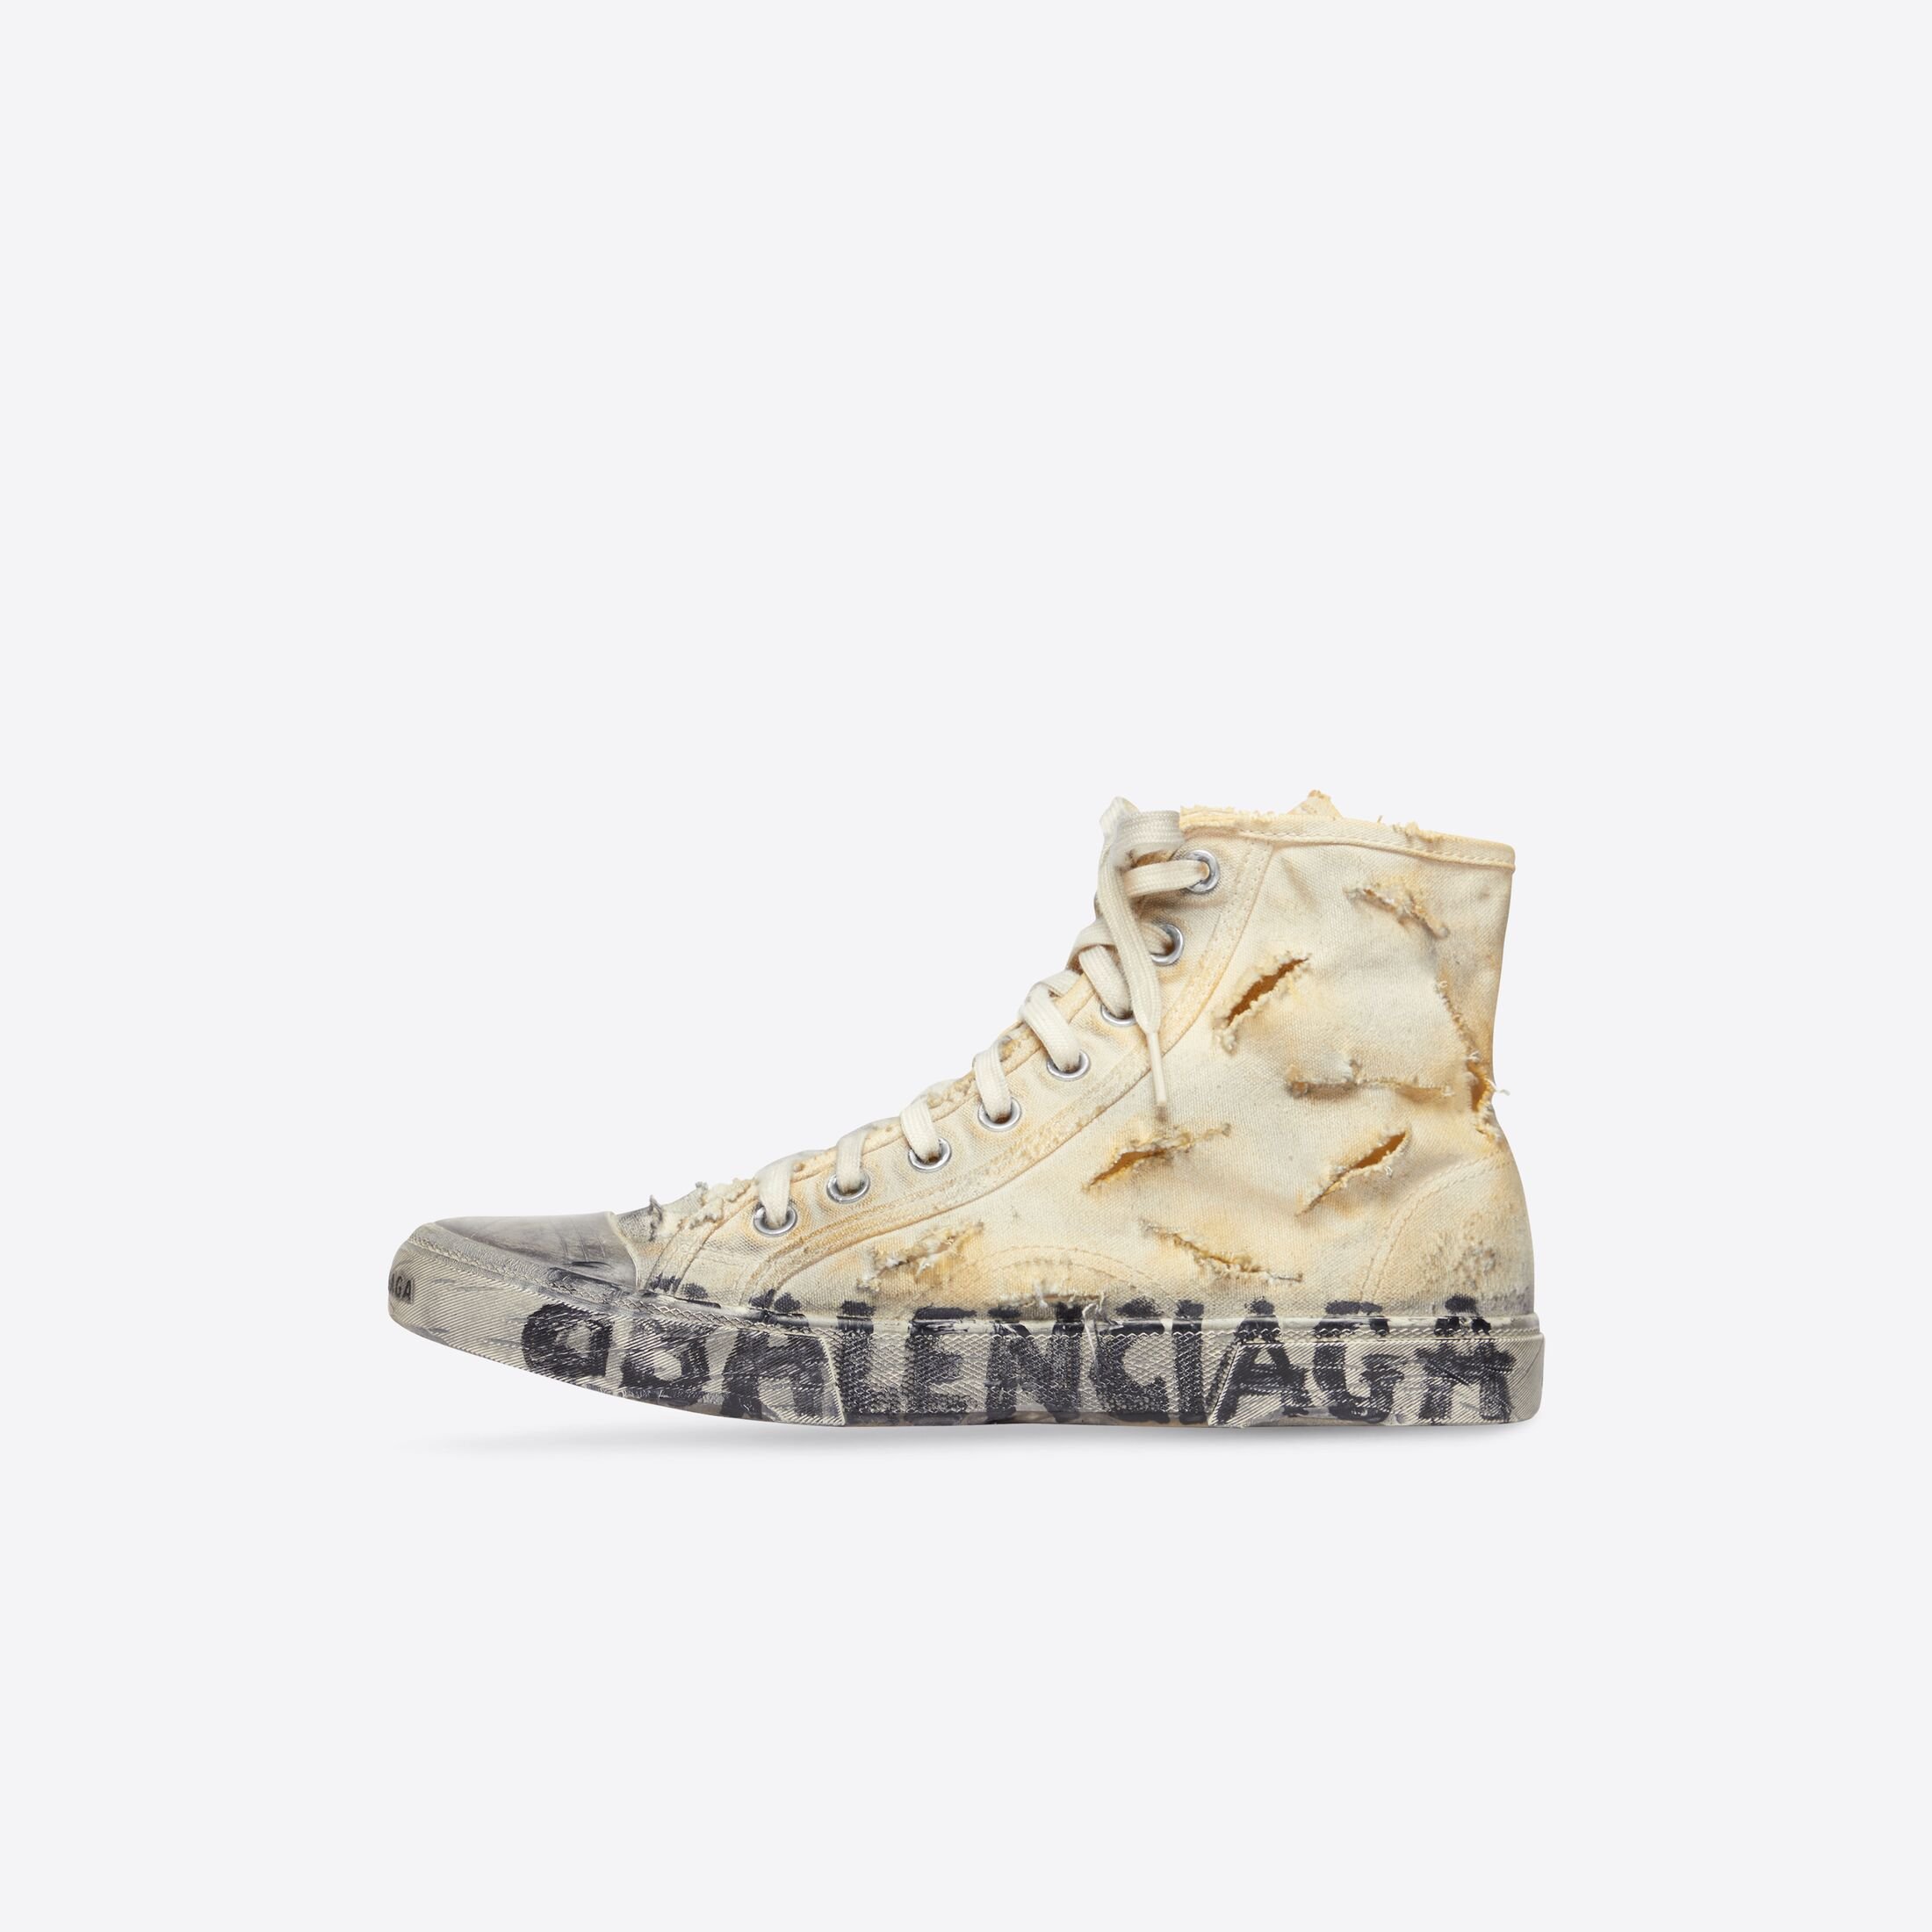 balenciaga's destroyed $1,850 sneaker